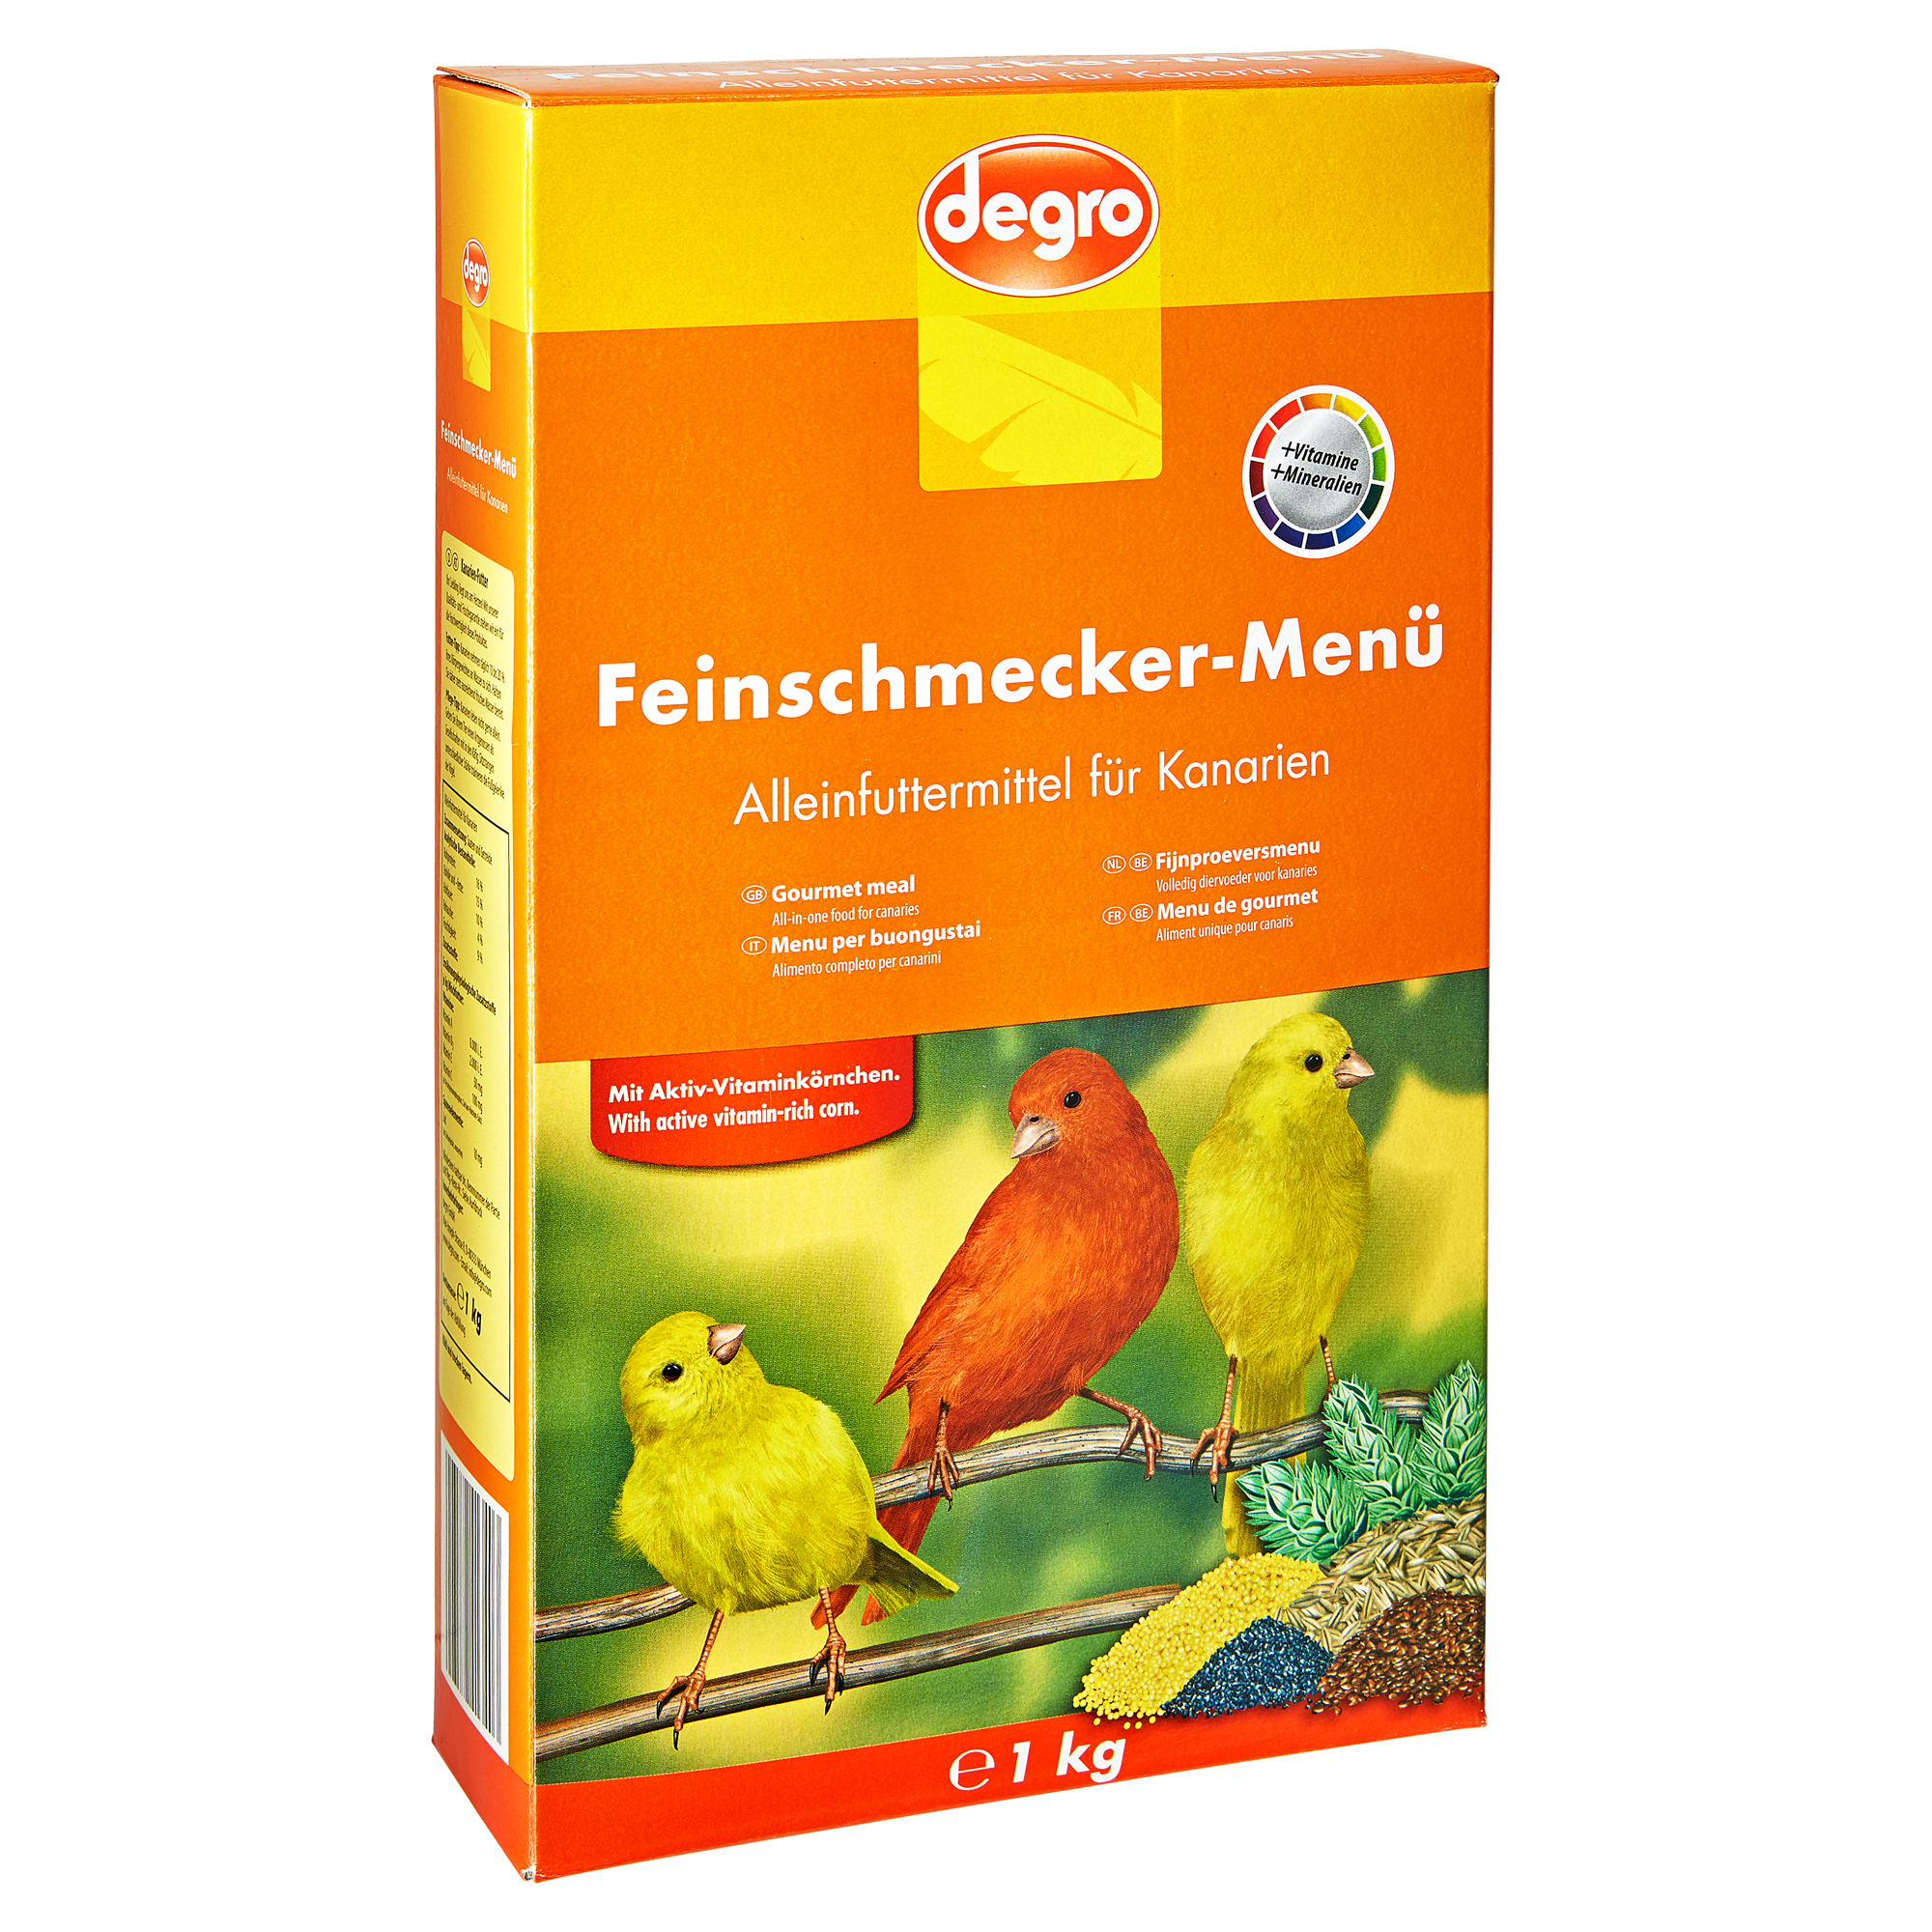 Kanarienfutter "Feinschmecker-Menü" 1 kg + product picture